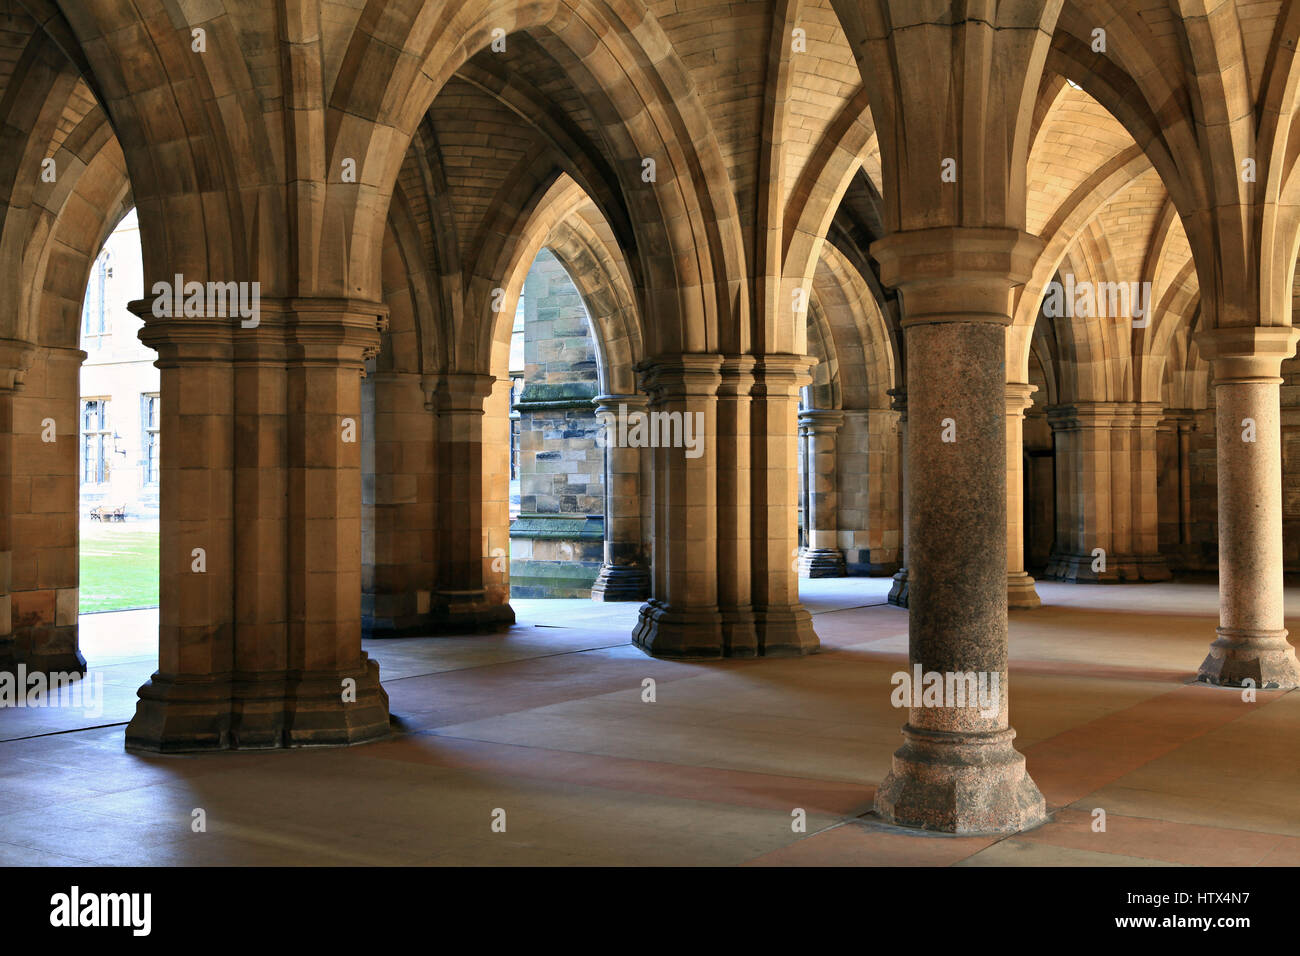 Arcades de l'Université de Glasgow. Ecosse, Royaume-Uni Banque D'Images